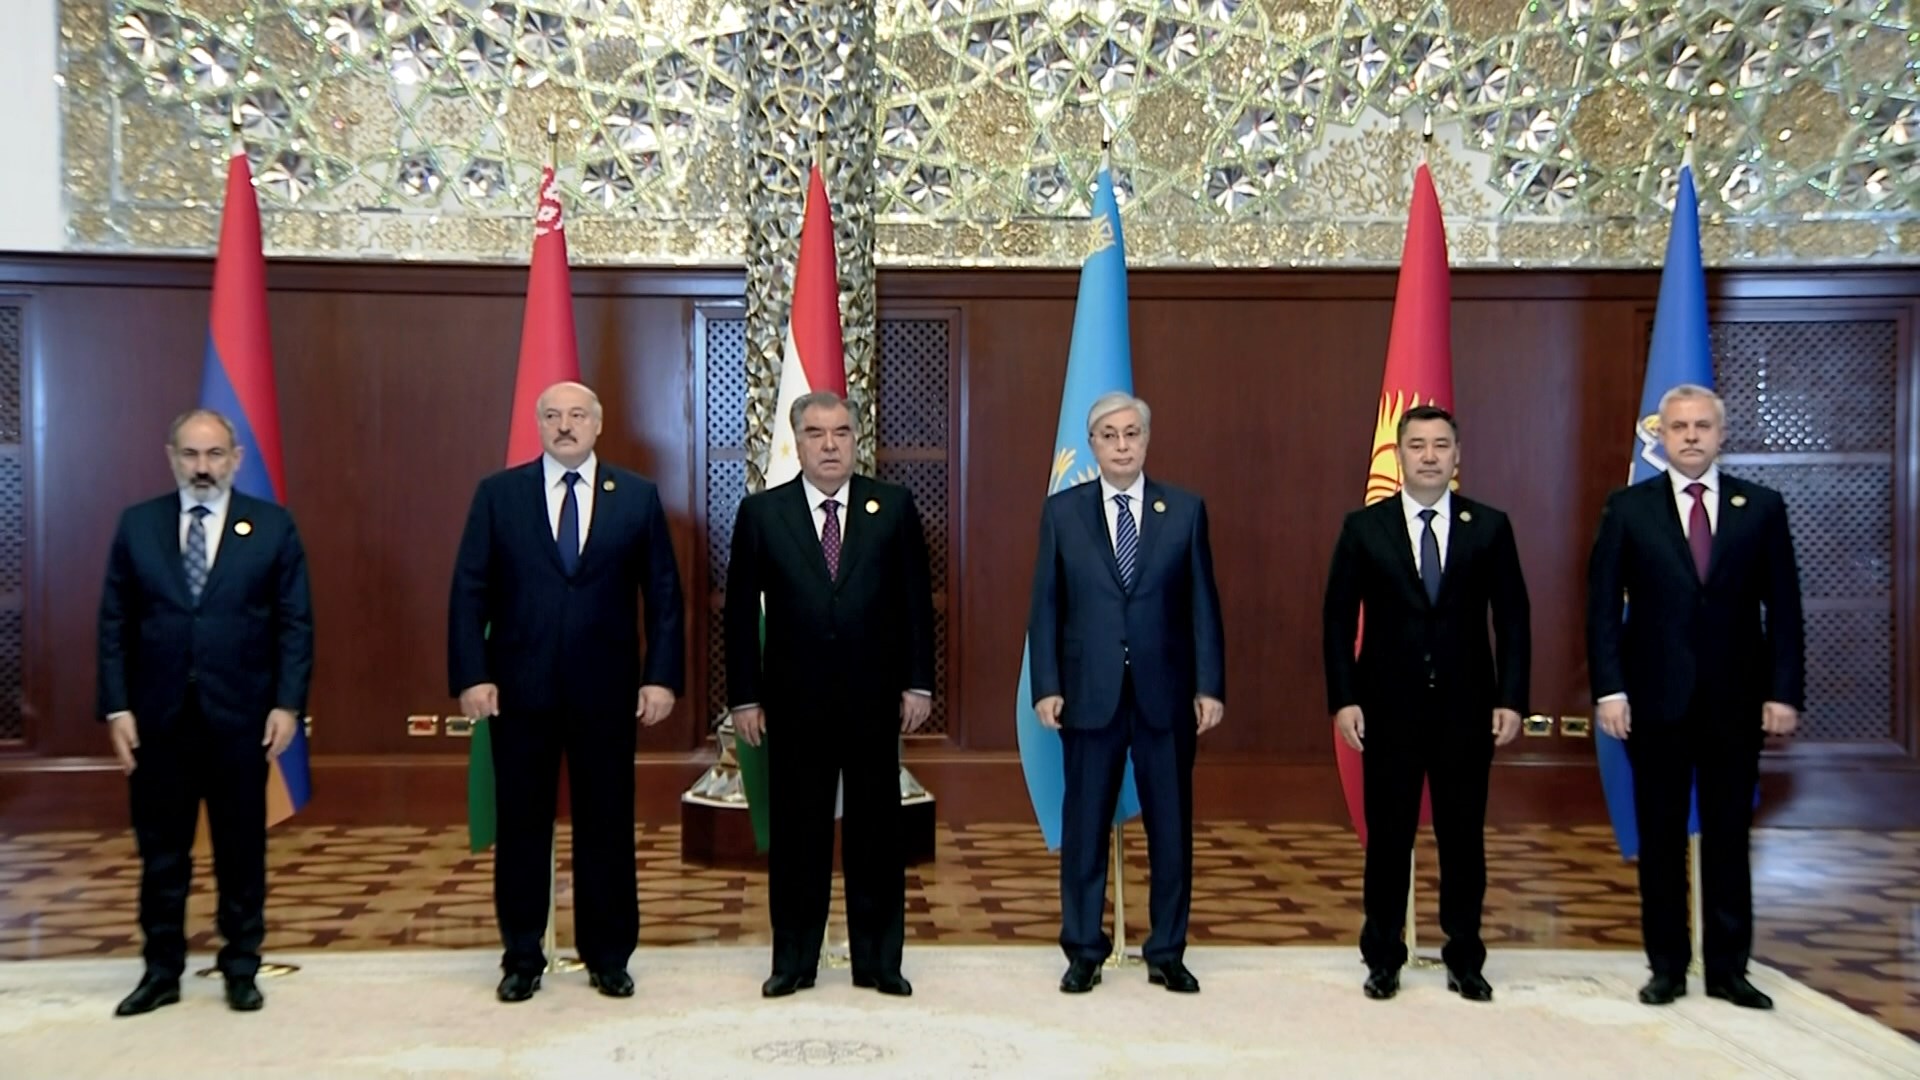 Aleksandr Lukashenko taking part in Tajikistan summits